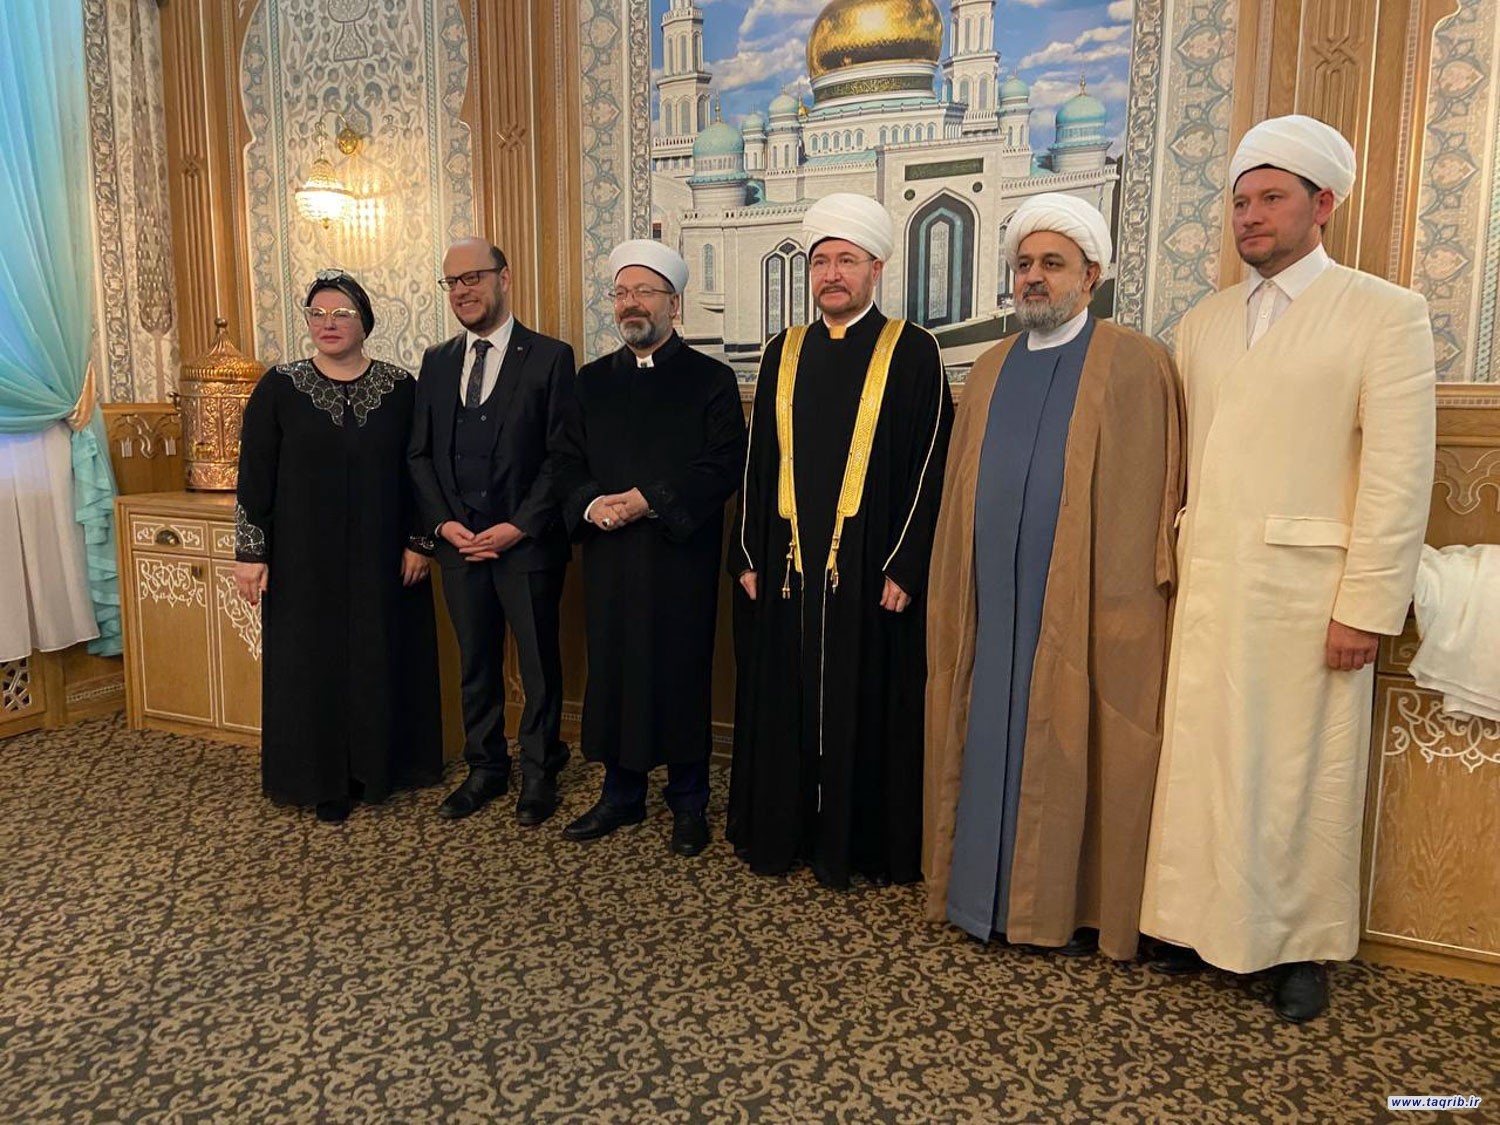 الدكتور شهرياري يلتقي مع علي ارباش والشيخ رافيل عين الدين على هامش صلاة الجمعة في موسكو